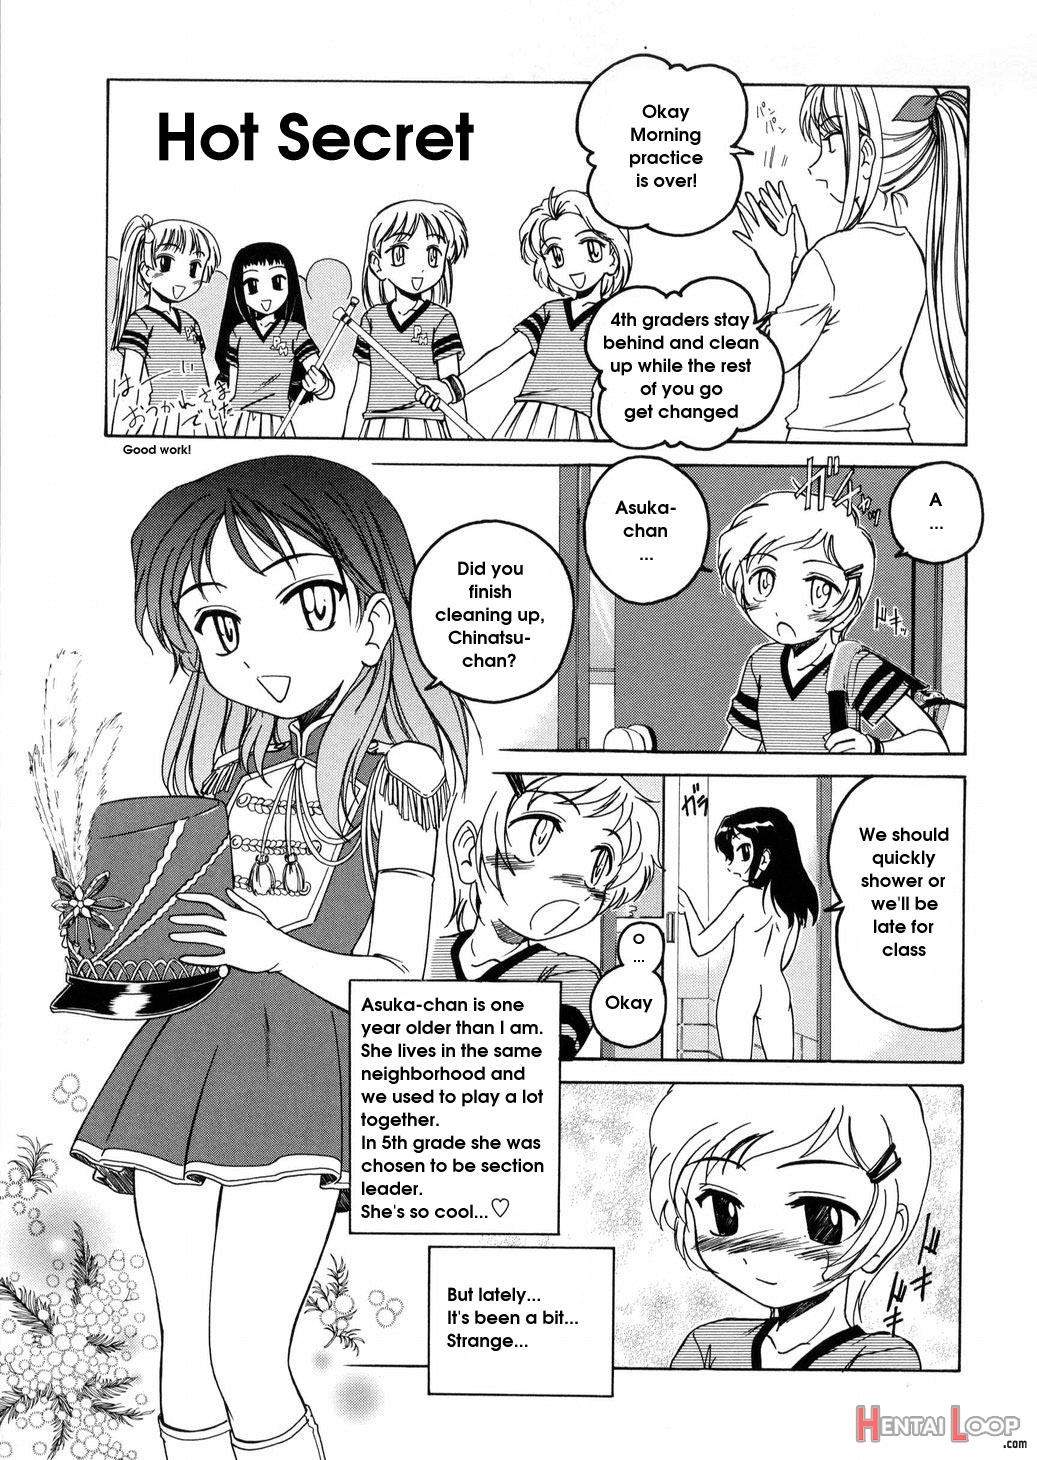 Hot Secret page 1